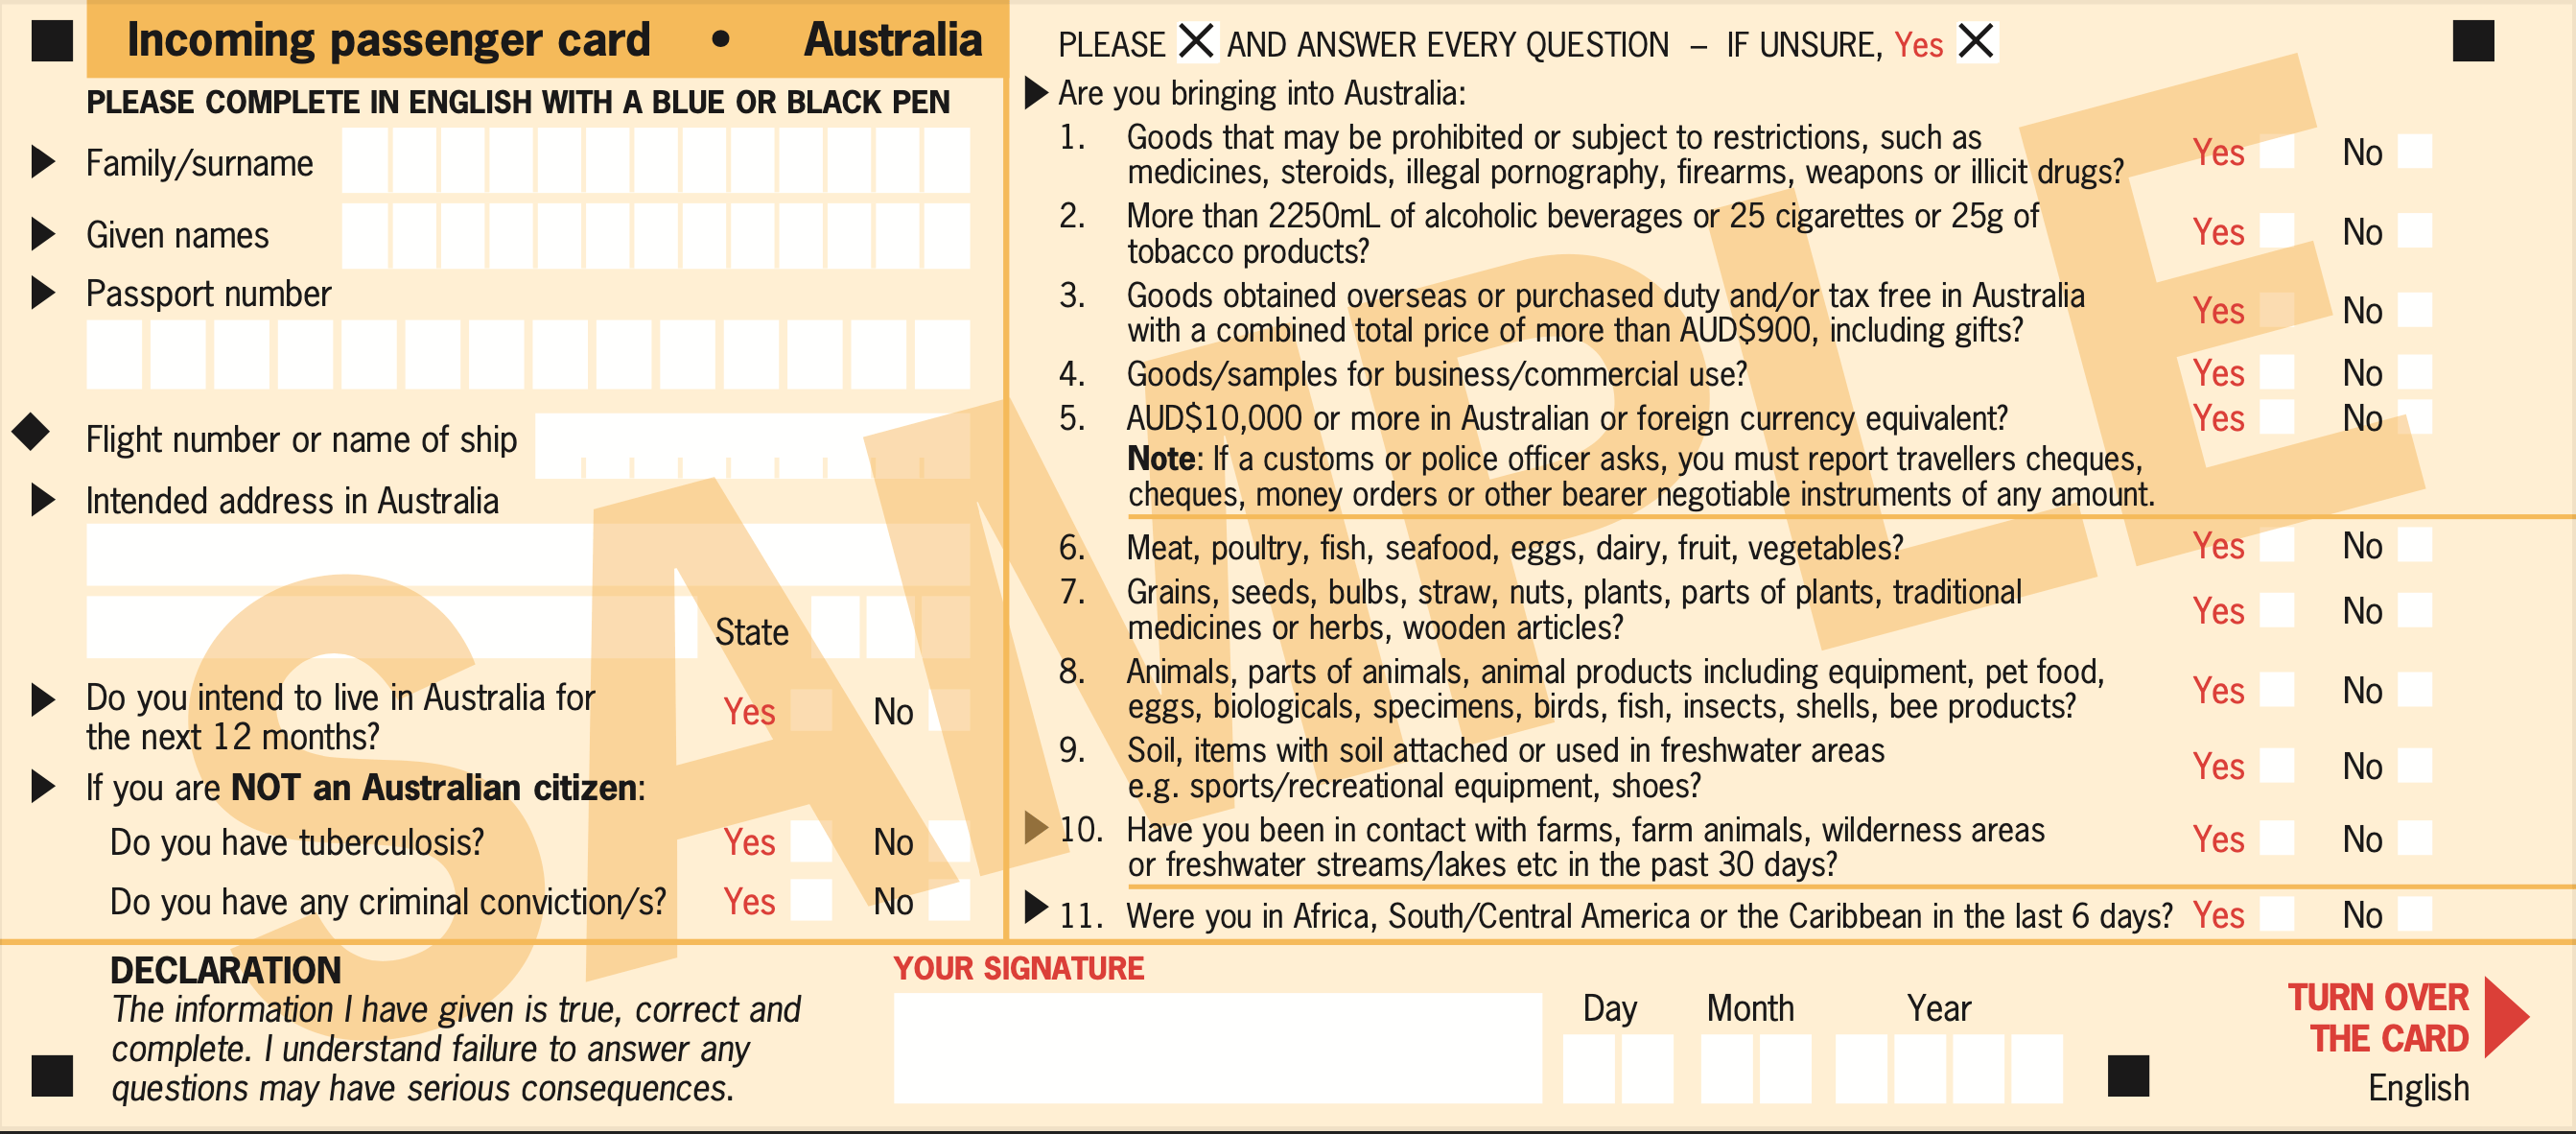 澳洲入境卡英文版正面